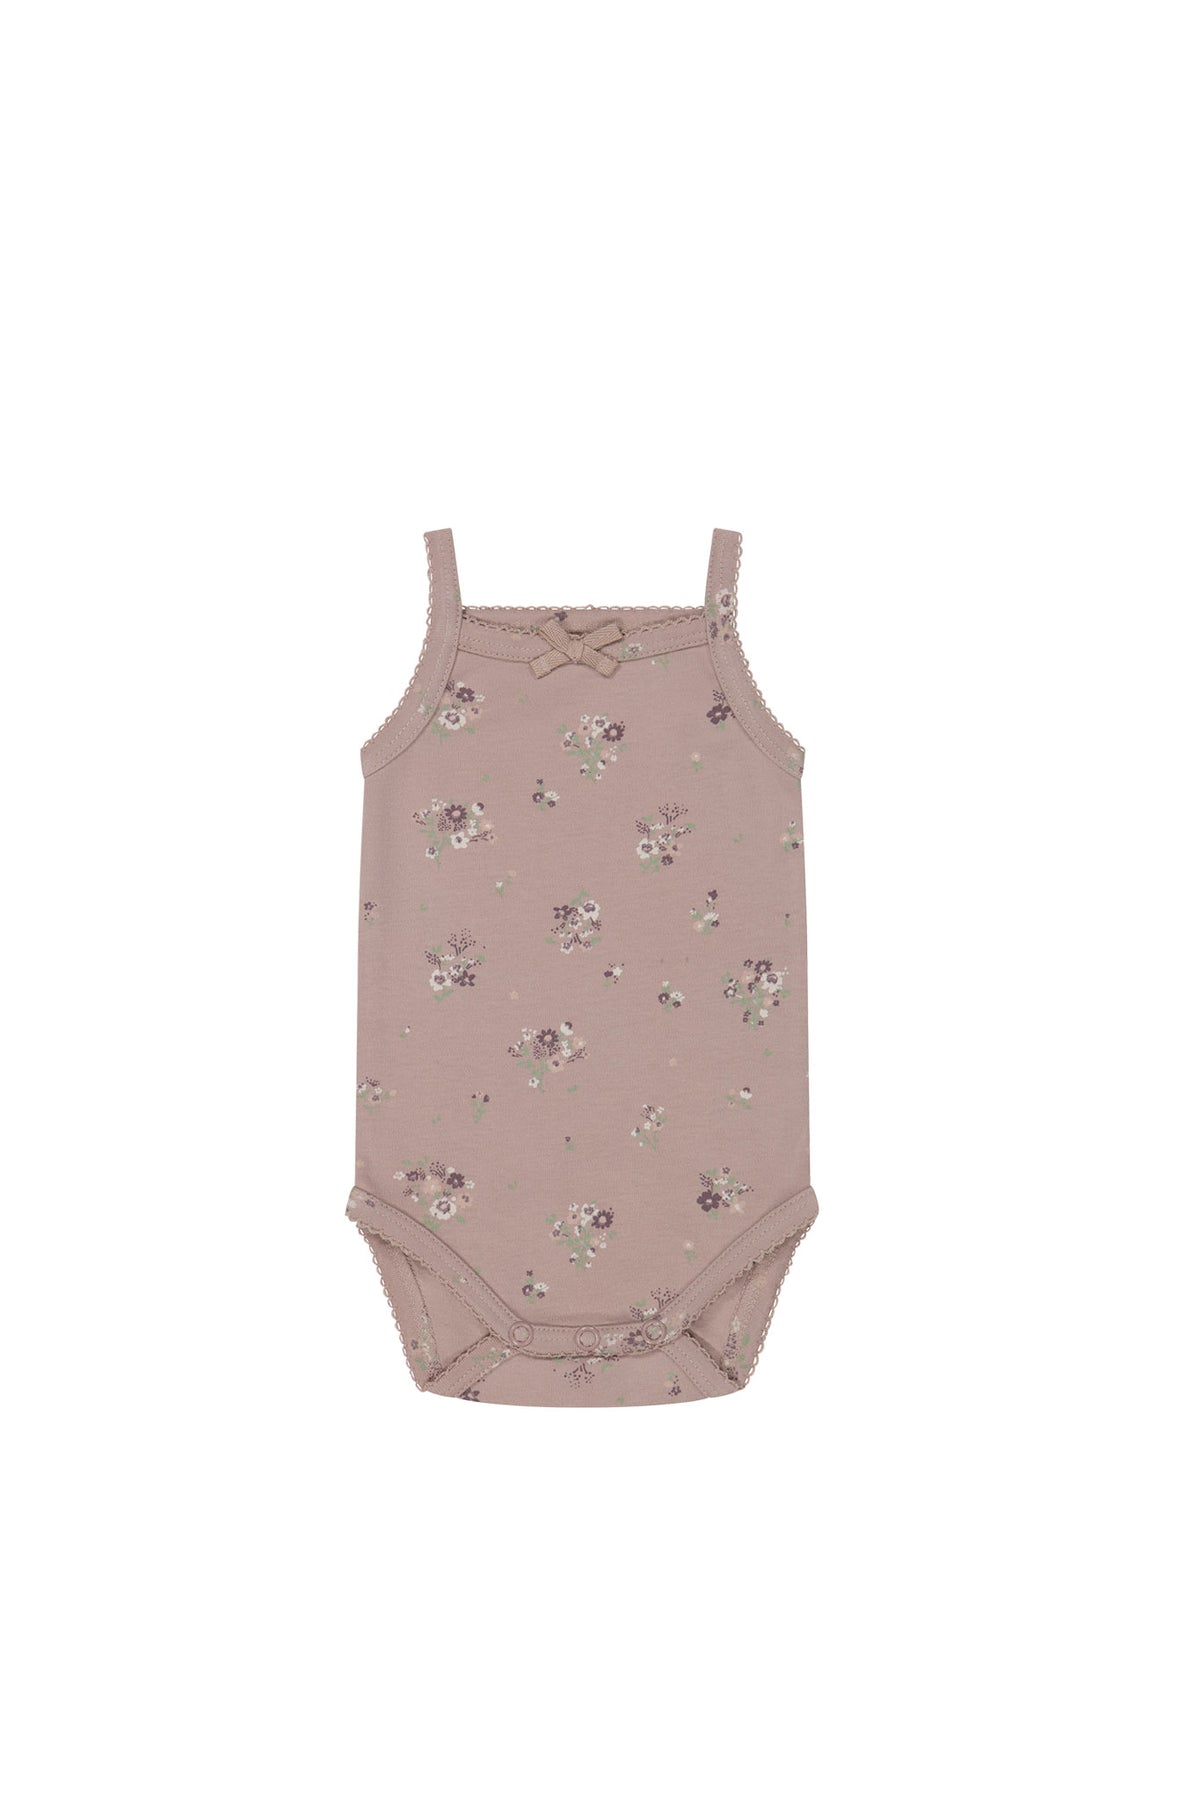 Organic Cotton Bridget Singlet Bodysuit - Lauren Floral Fawn - Child Boutique